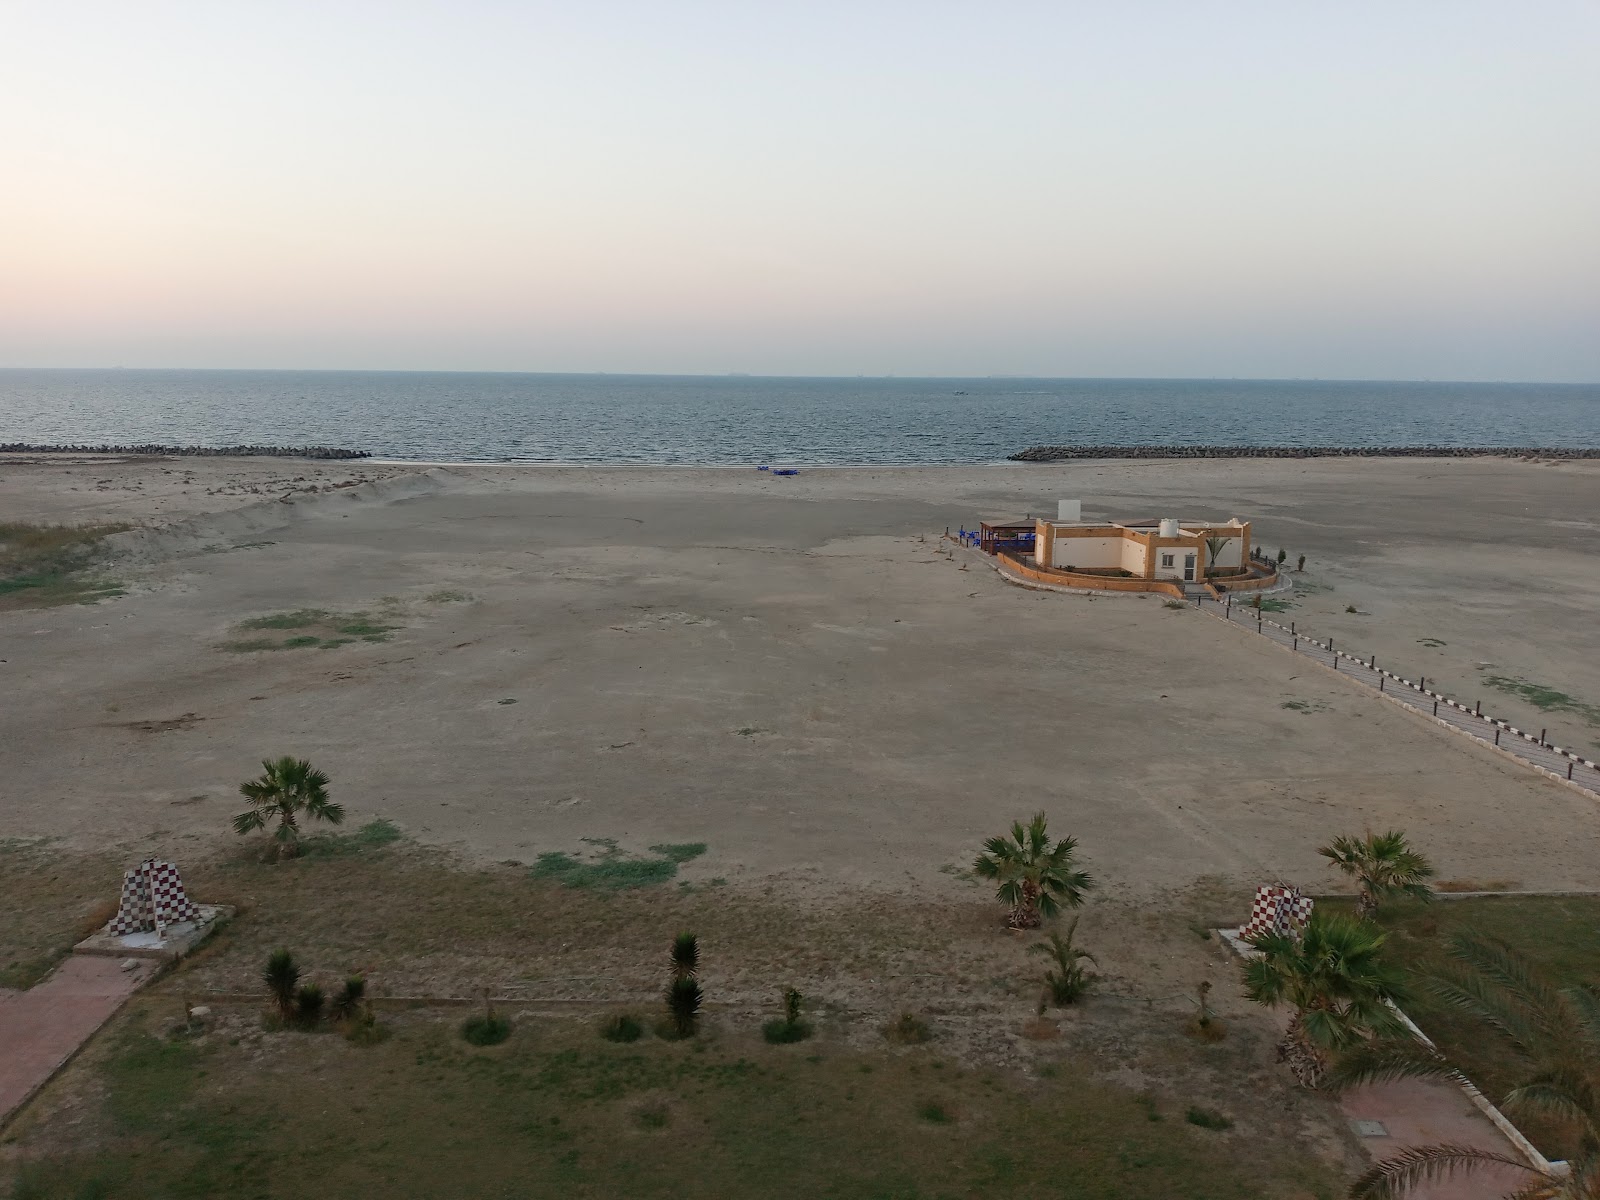 Zdjęcie Al Abtal Beach z powierzchnią jasny piasek